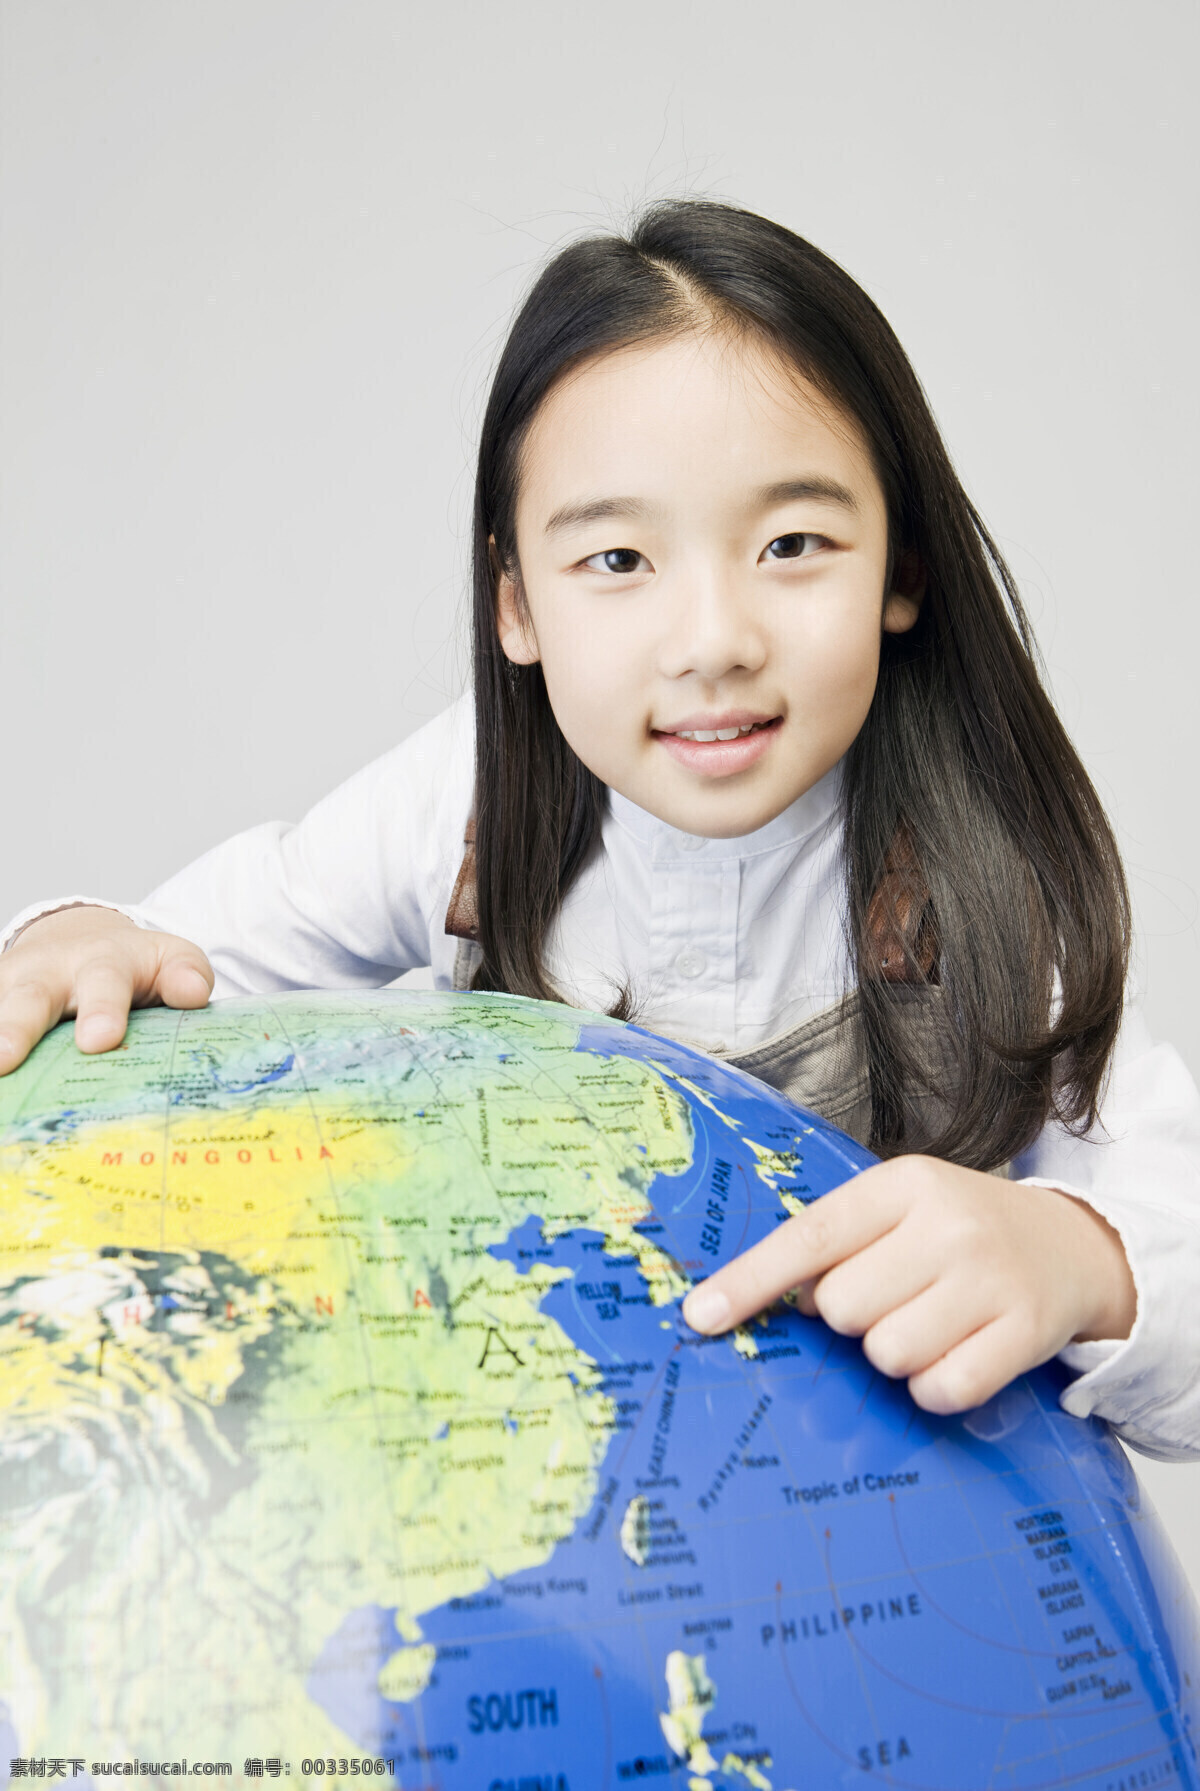 观看 地球仪 长发 可爱 女孩 学生 同学 儿童 女生 小学 学校 教室 教育 地理课 地图 指着 摄影图 素材图库 高清图片 地球图片 环境家居